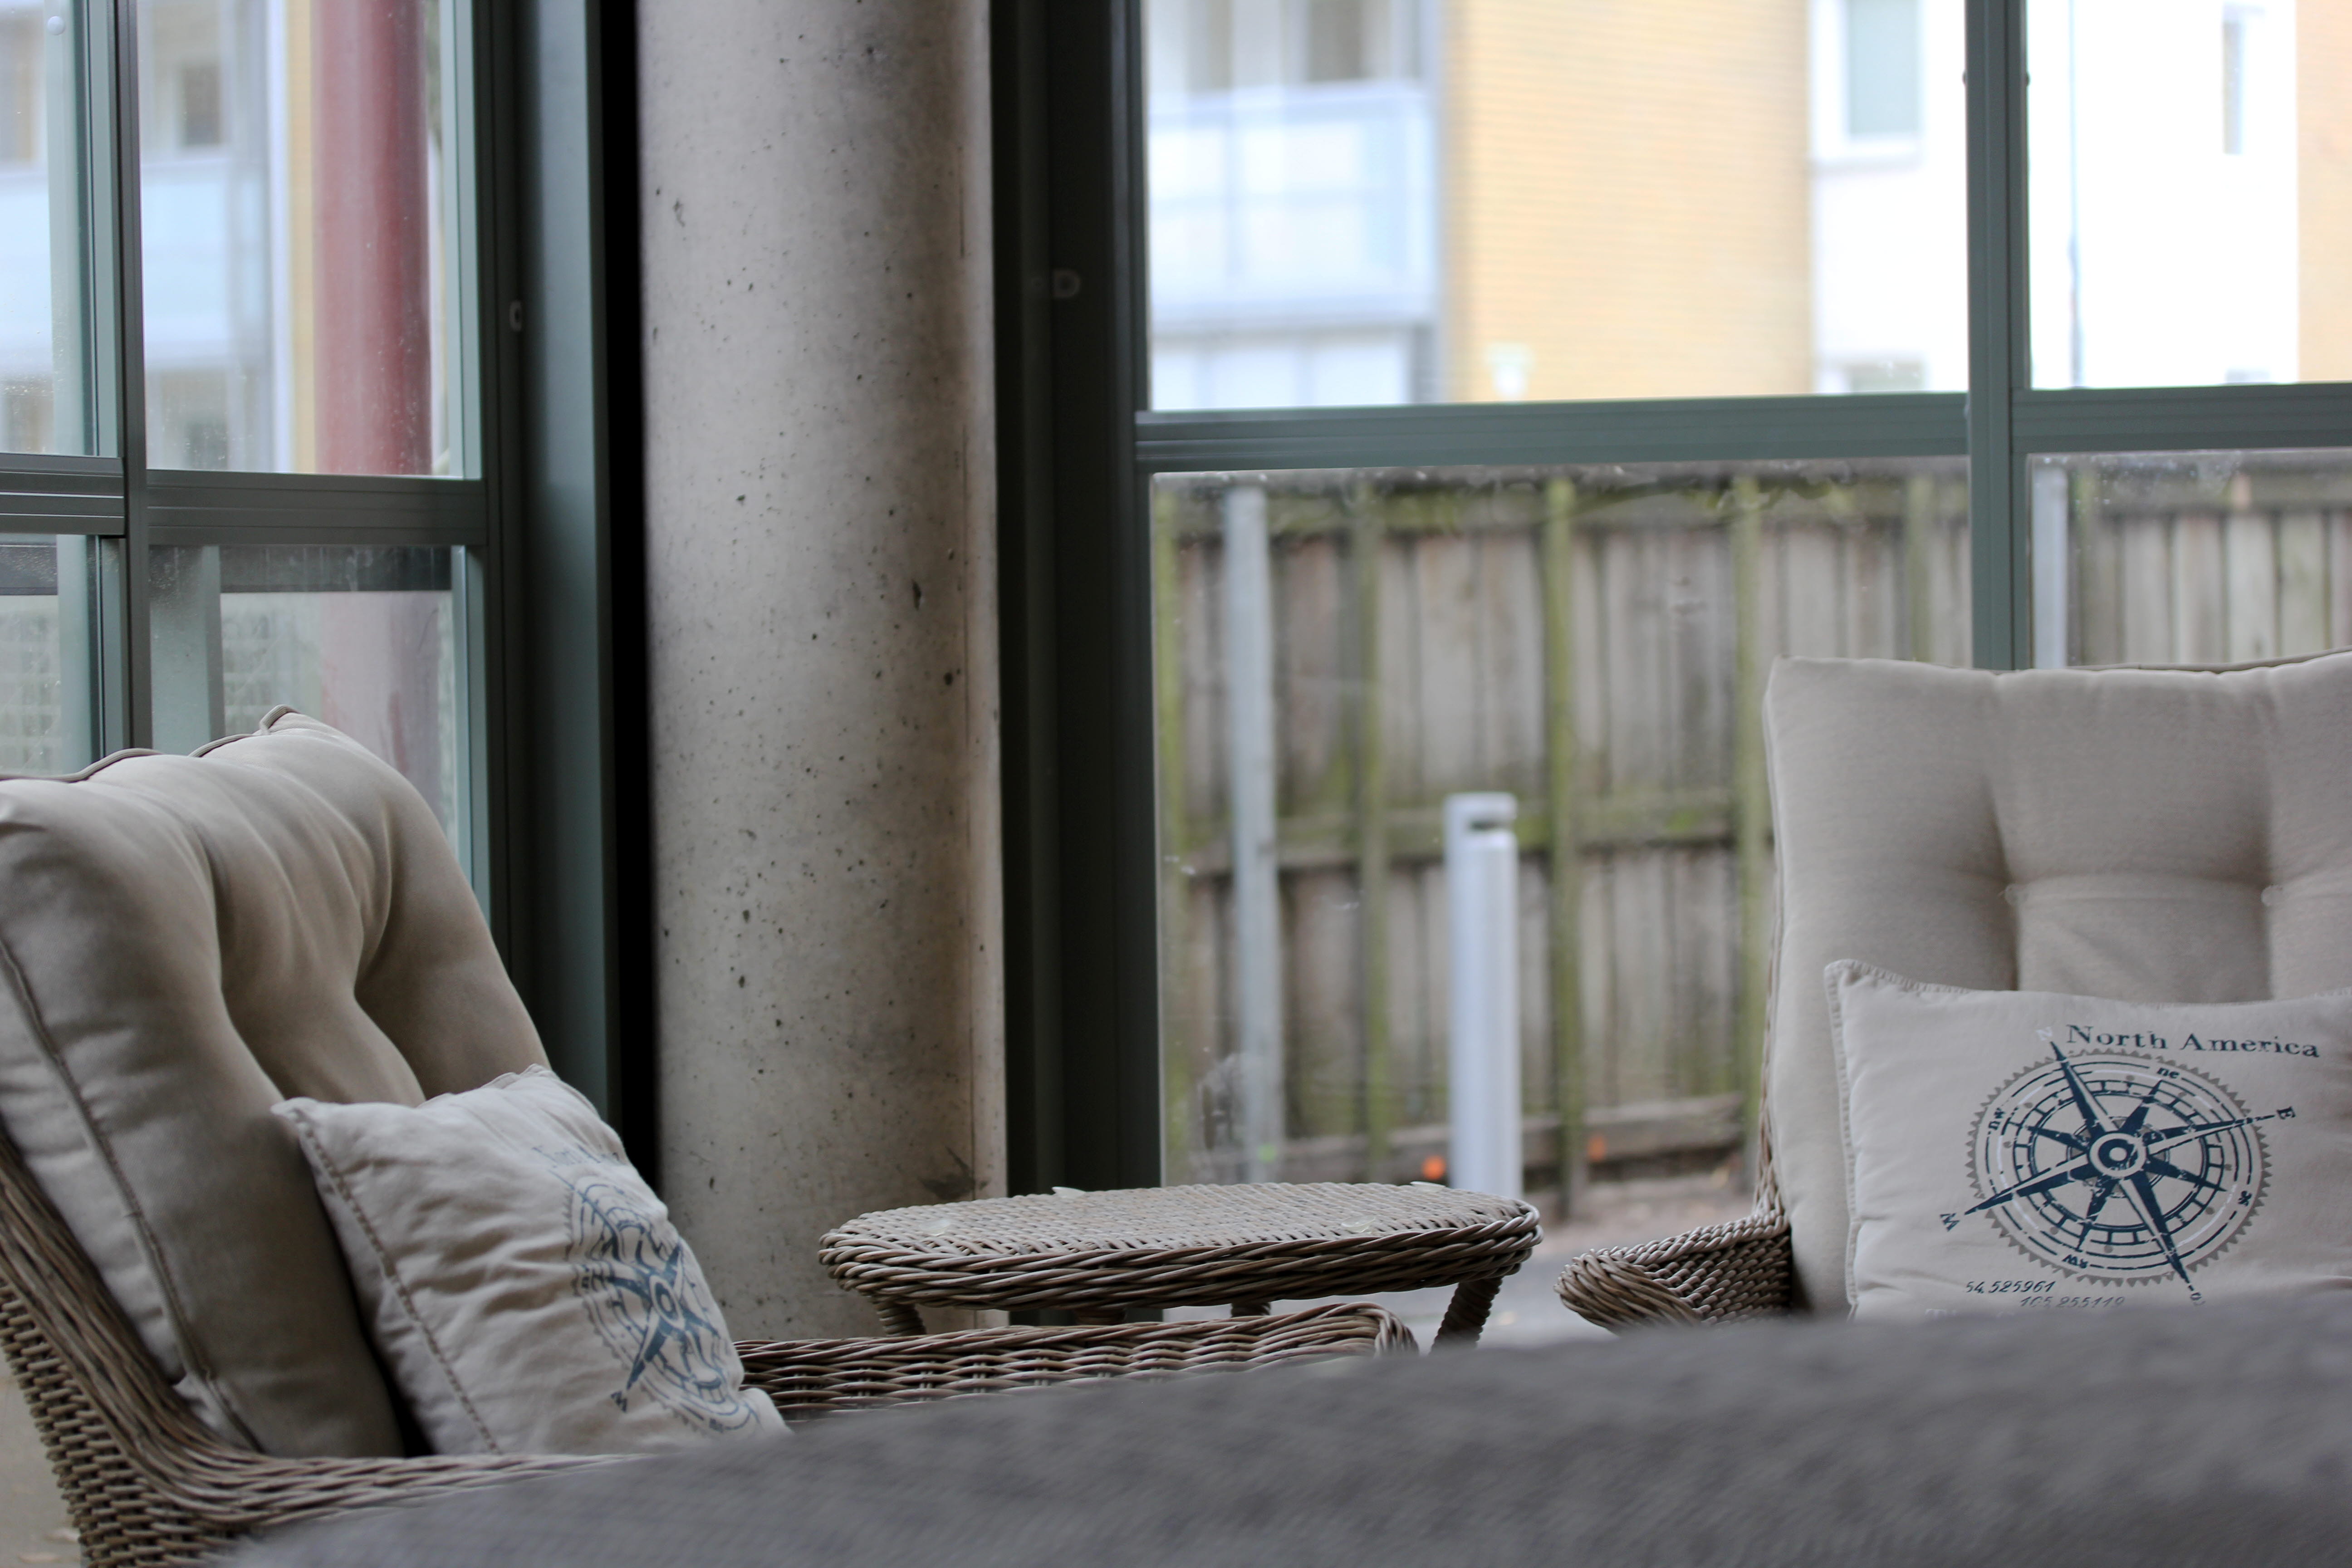 Två loungemöbler på en inglasad fasad. I bakgrunden skyms ett staket och lägenhetshus